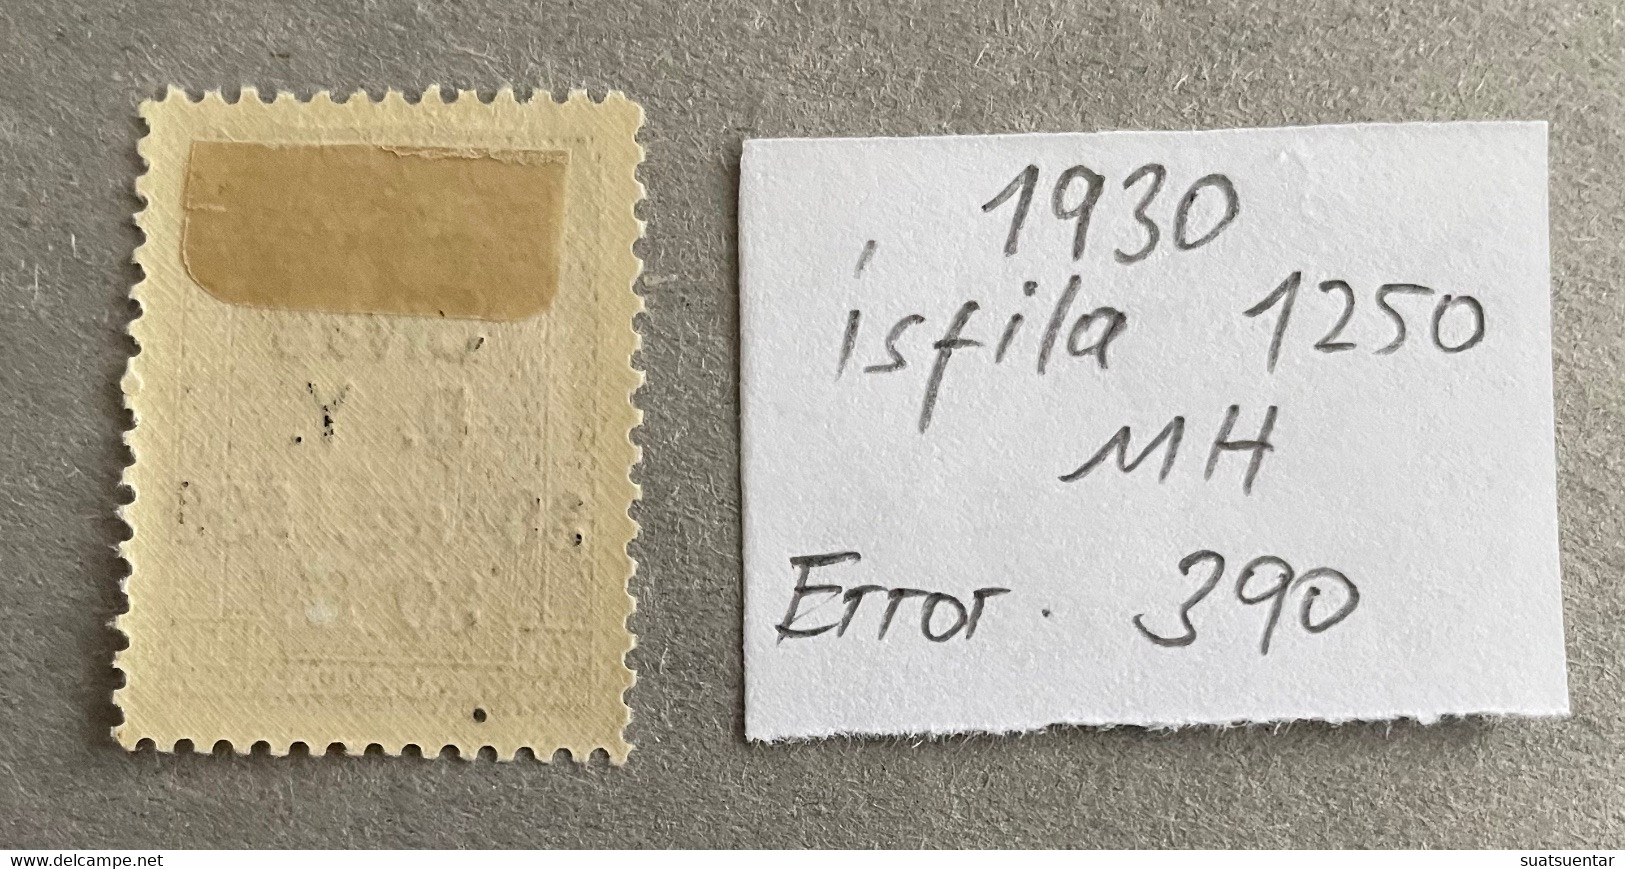 1930 Sivas-Ankara Railway Stamps Error   390 MH Isfila 1250 - Ungebraucht